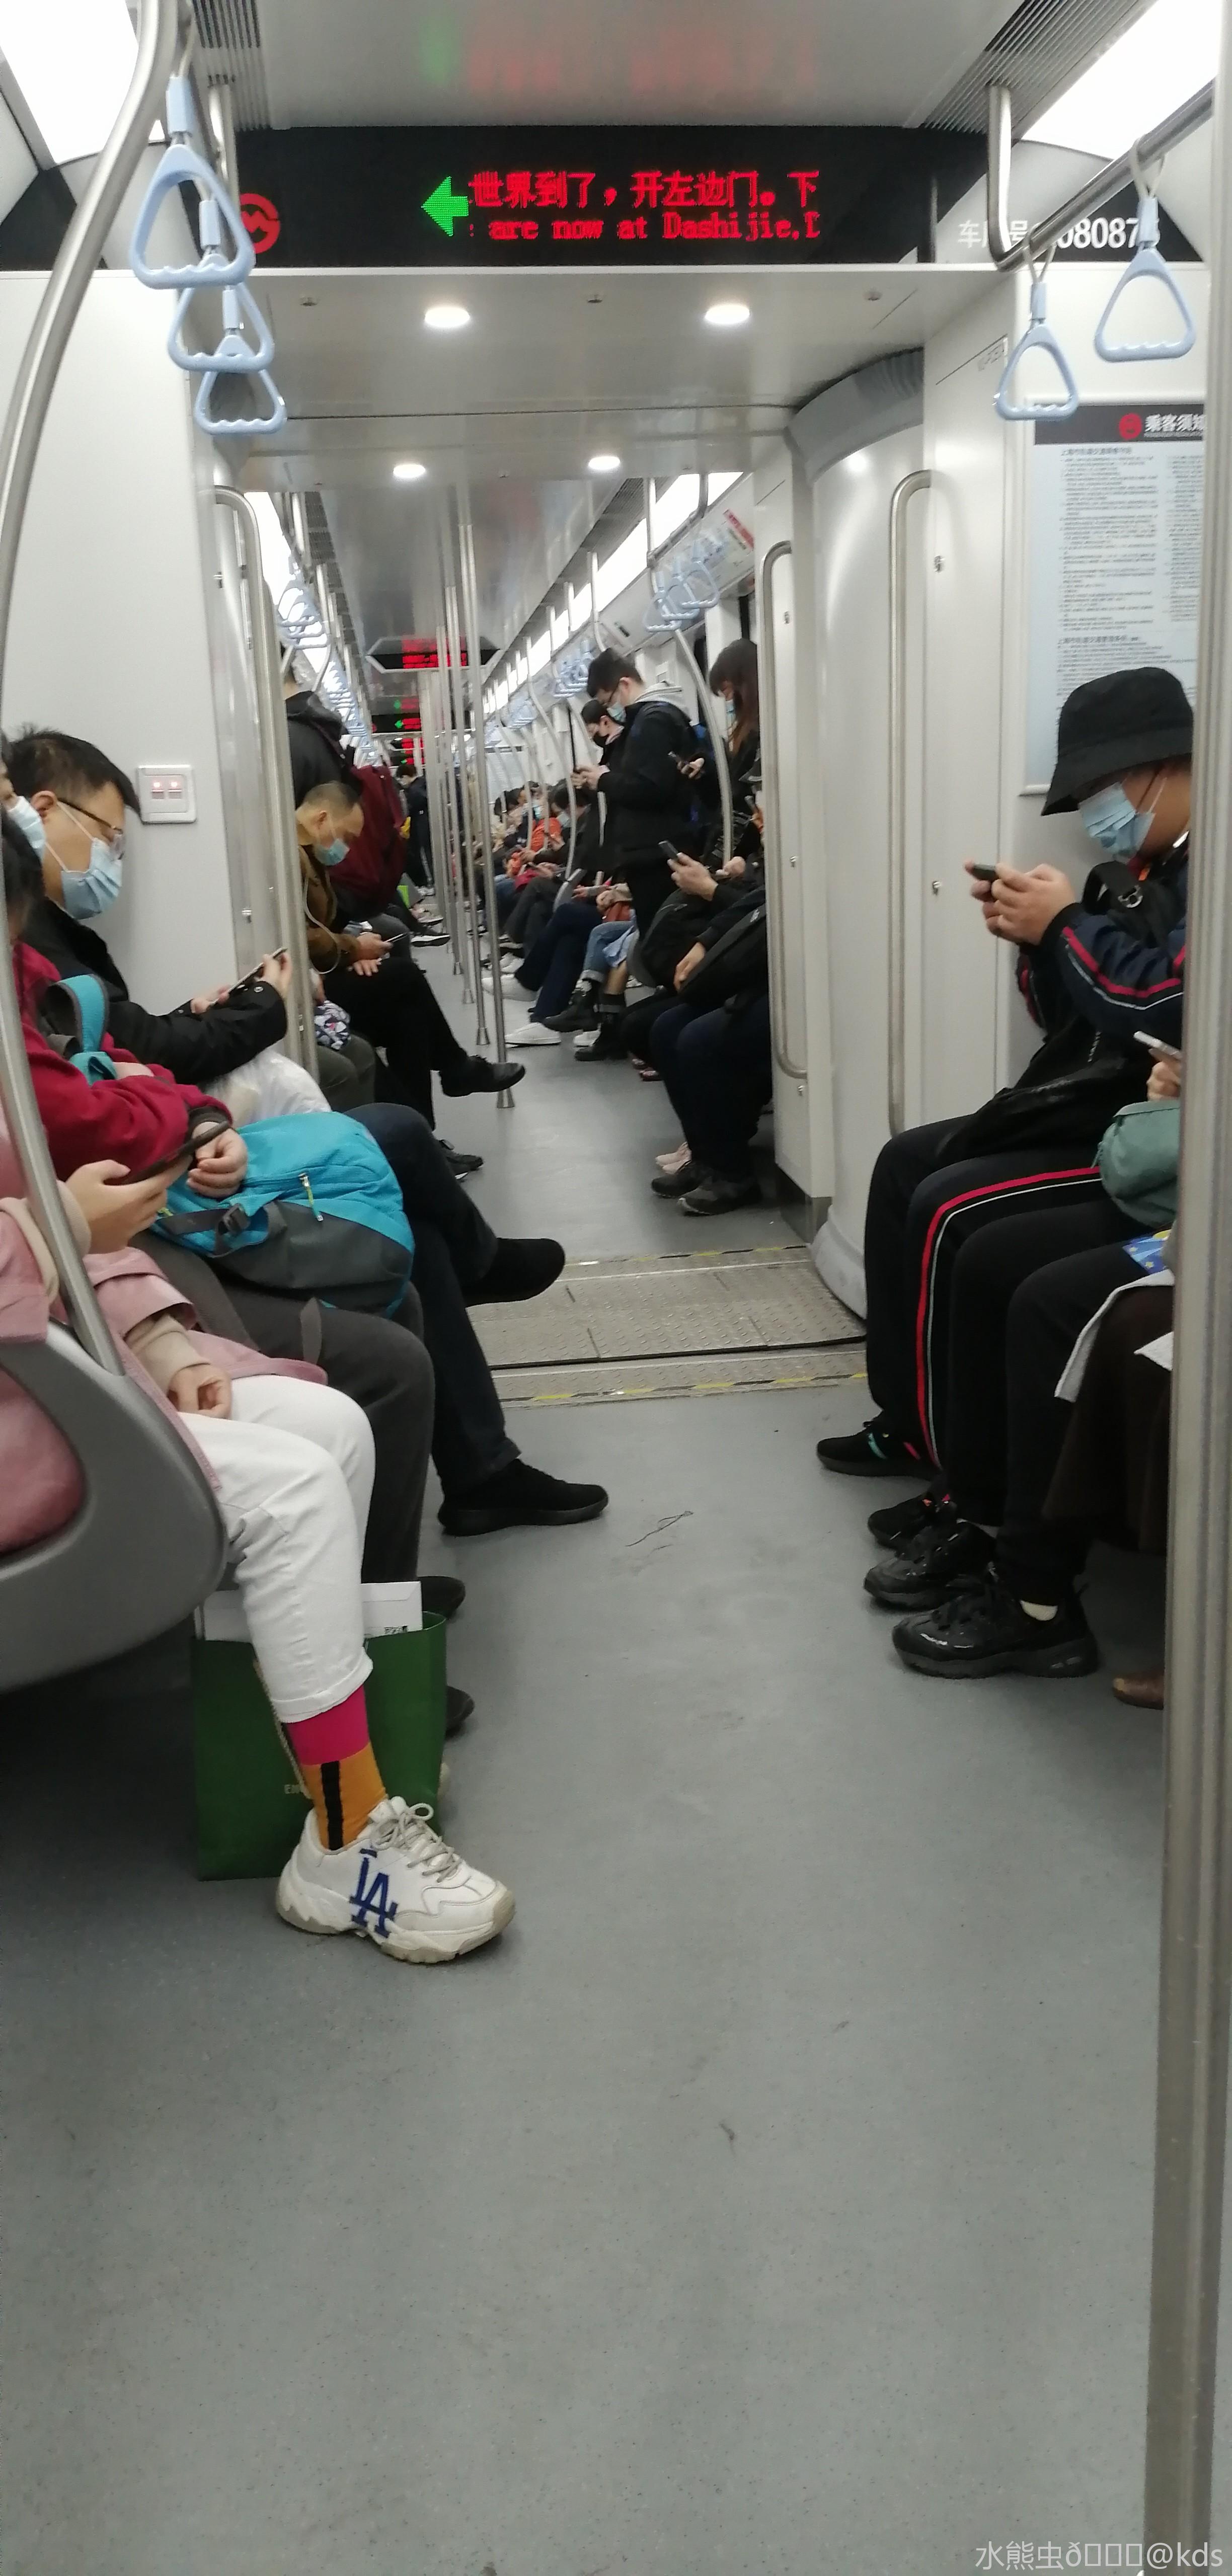 亲历京城地铁早高峰,要多挤有多挤(图)